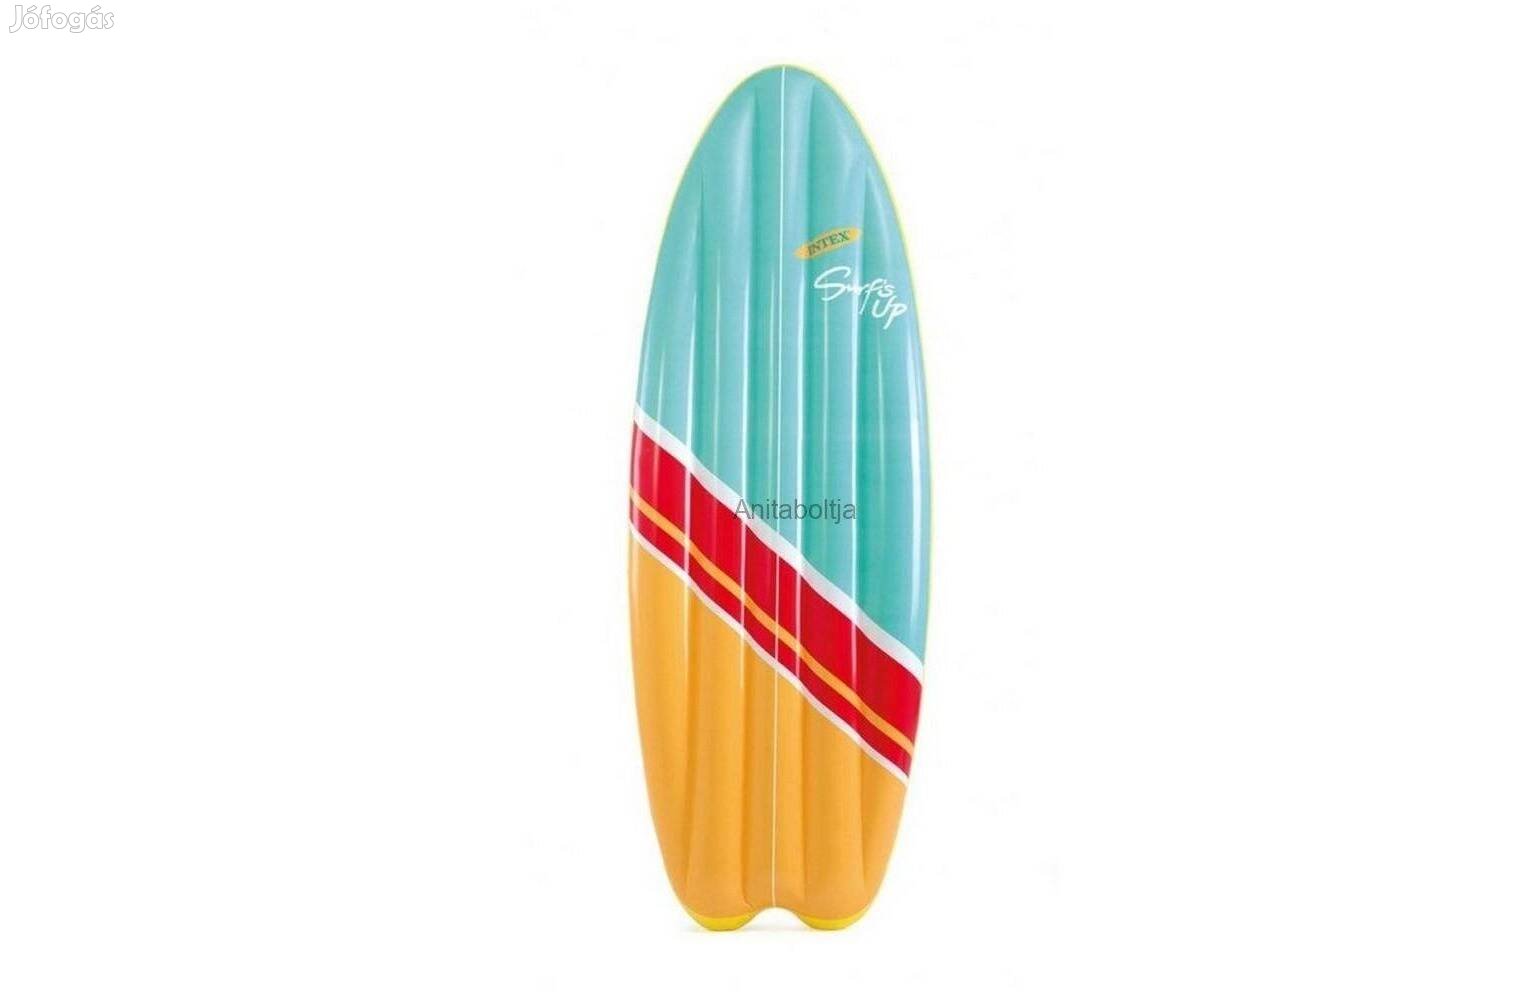 Felfújható szörfdeszka Intex Surfs UP - Kék/sárga